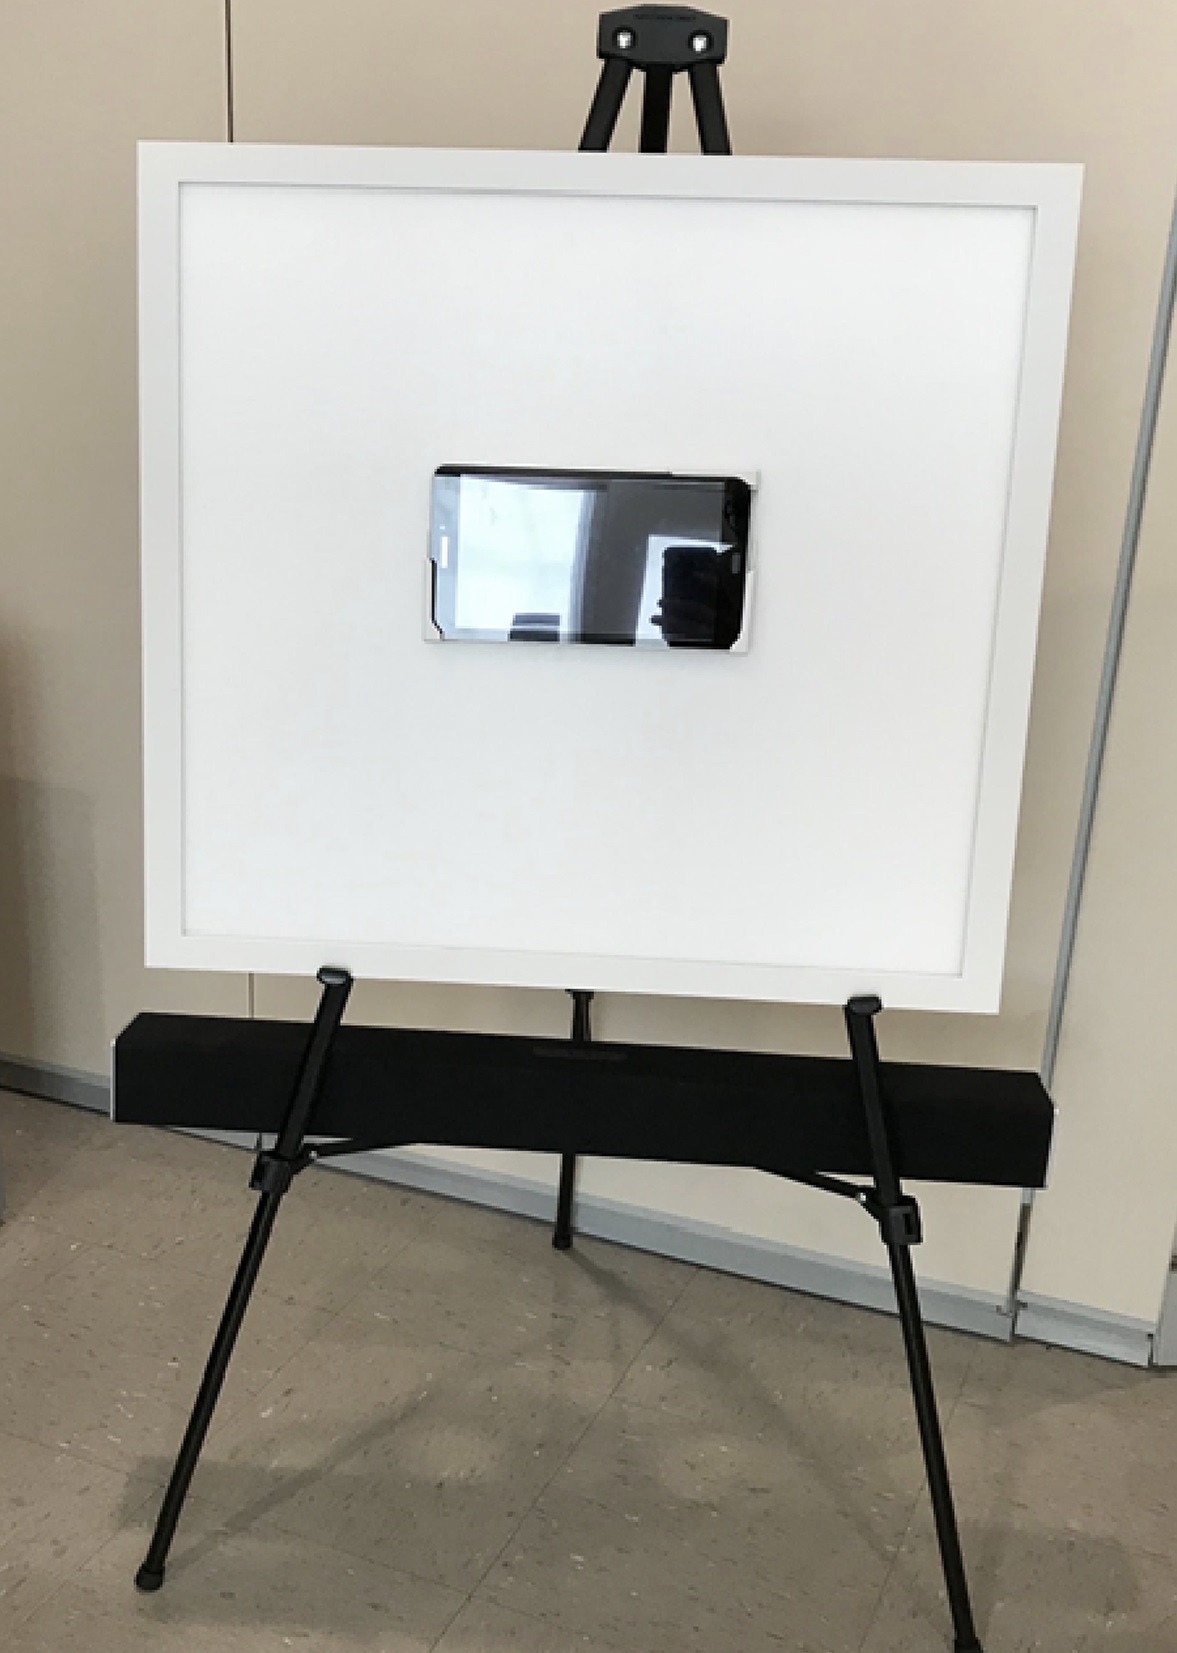 Sestava pro světelnou a zvukovou stimulaci. Bílá tabule je programovatelný panel se světelným LED displejem. Uprostřed je umístěn tablet s videoklipy, které udržují pozornost pacienta. Černý podélný box pod panelem je programovatelný zvukový systém. 